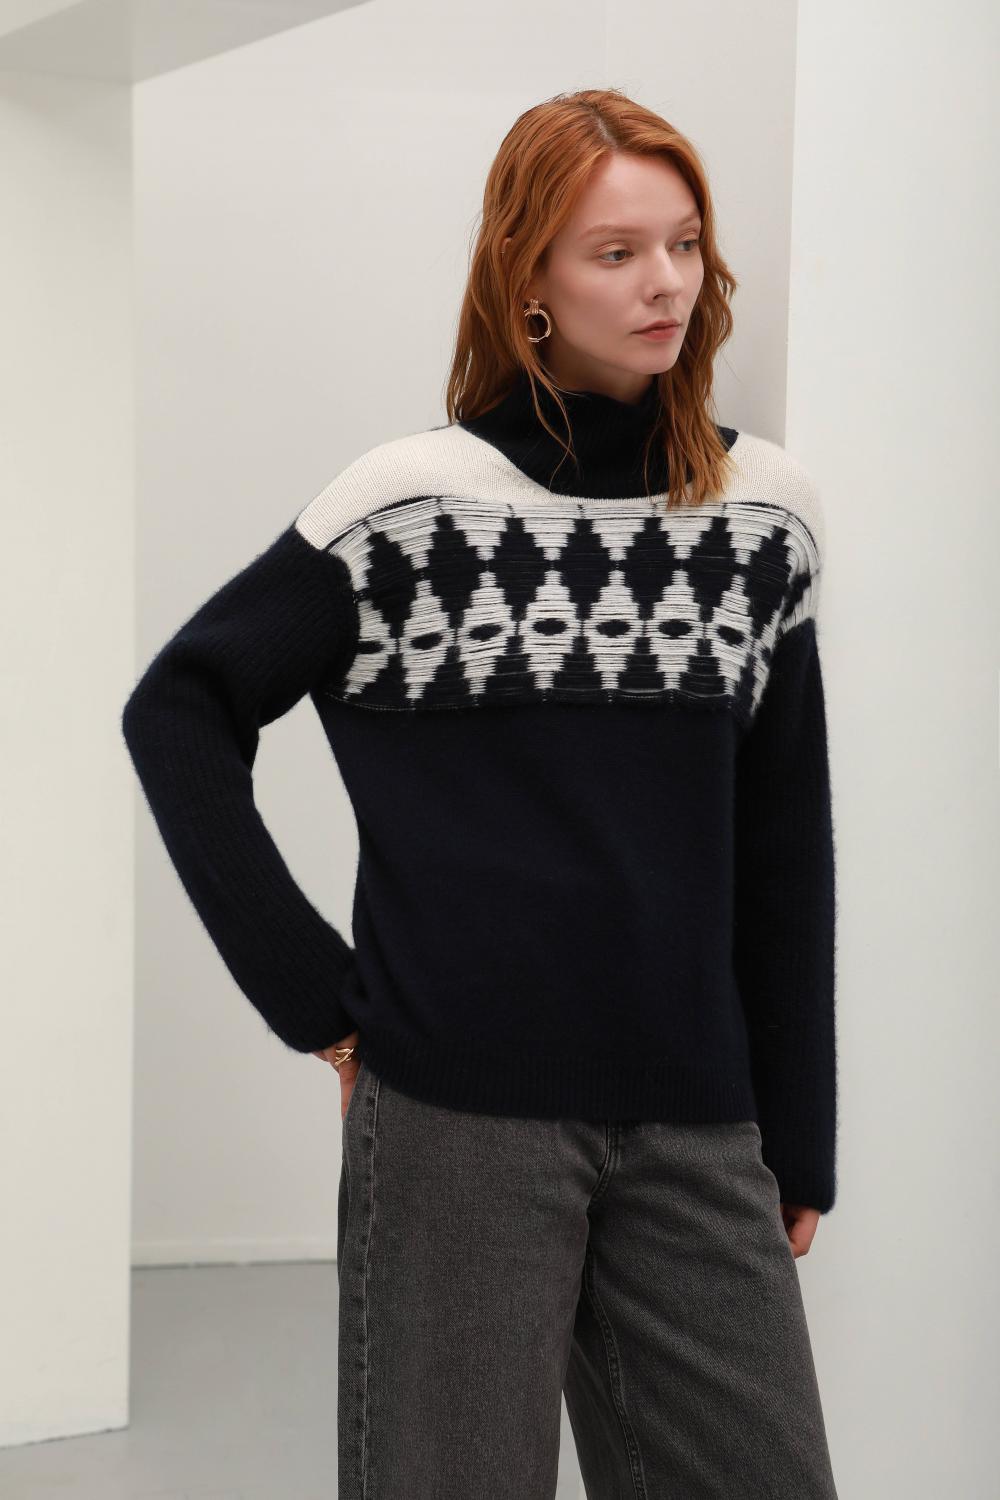 Custom women's cashmere knit warm fashion high collar